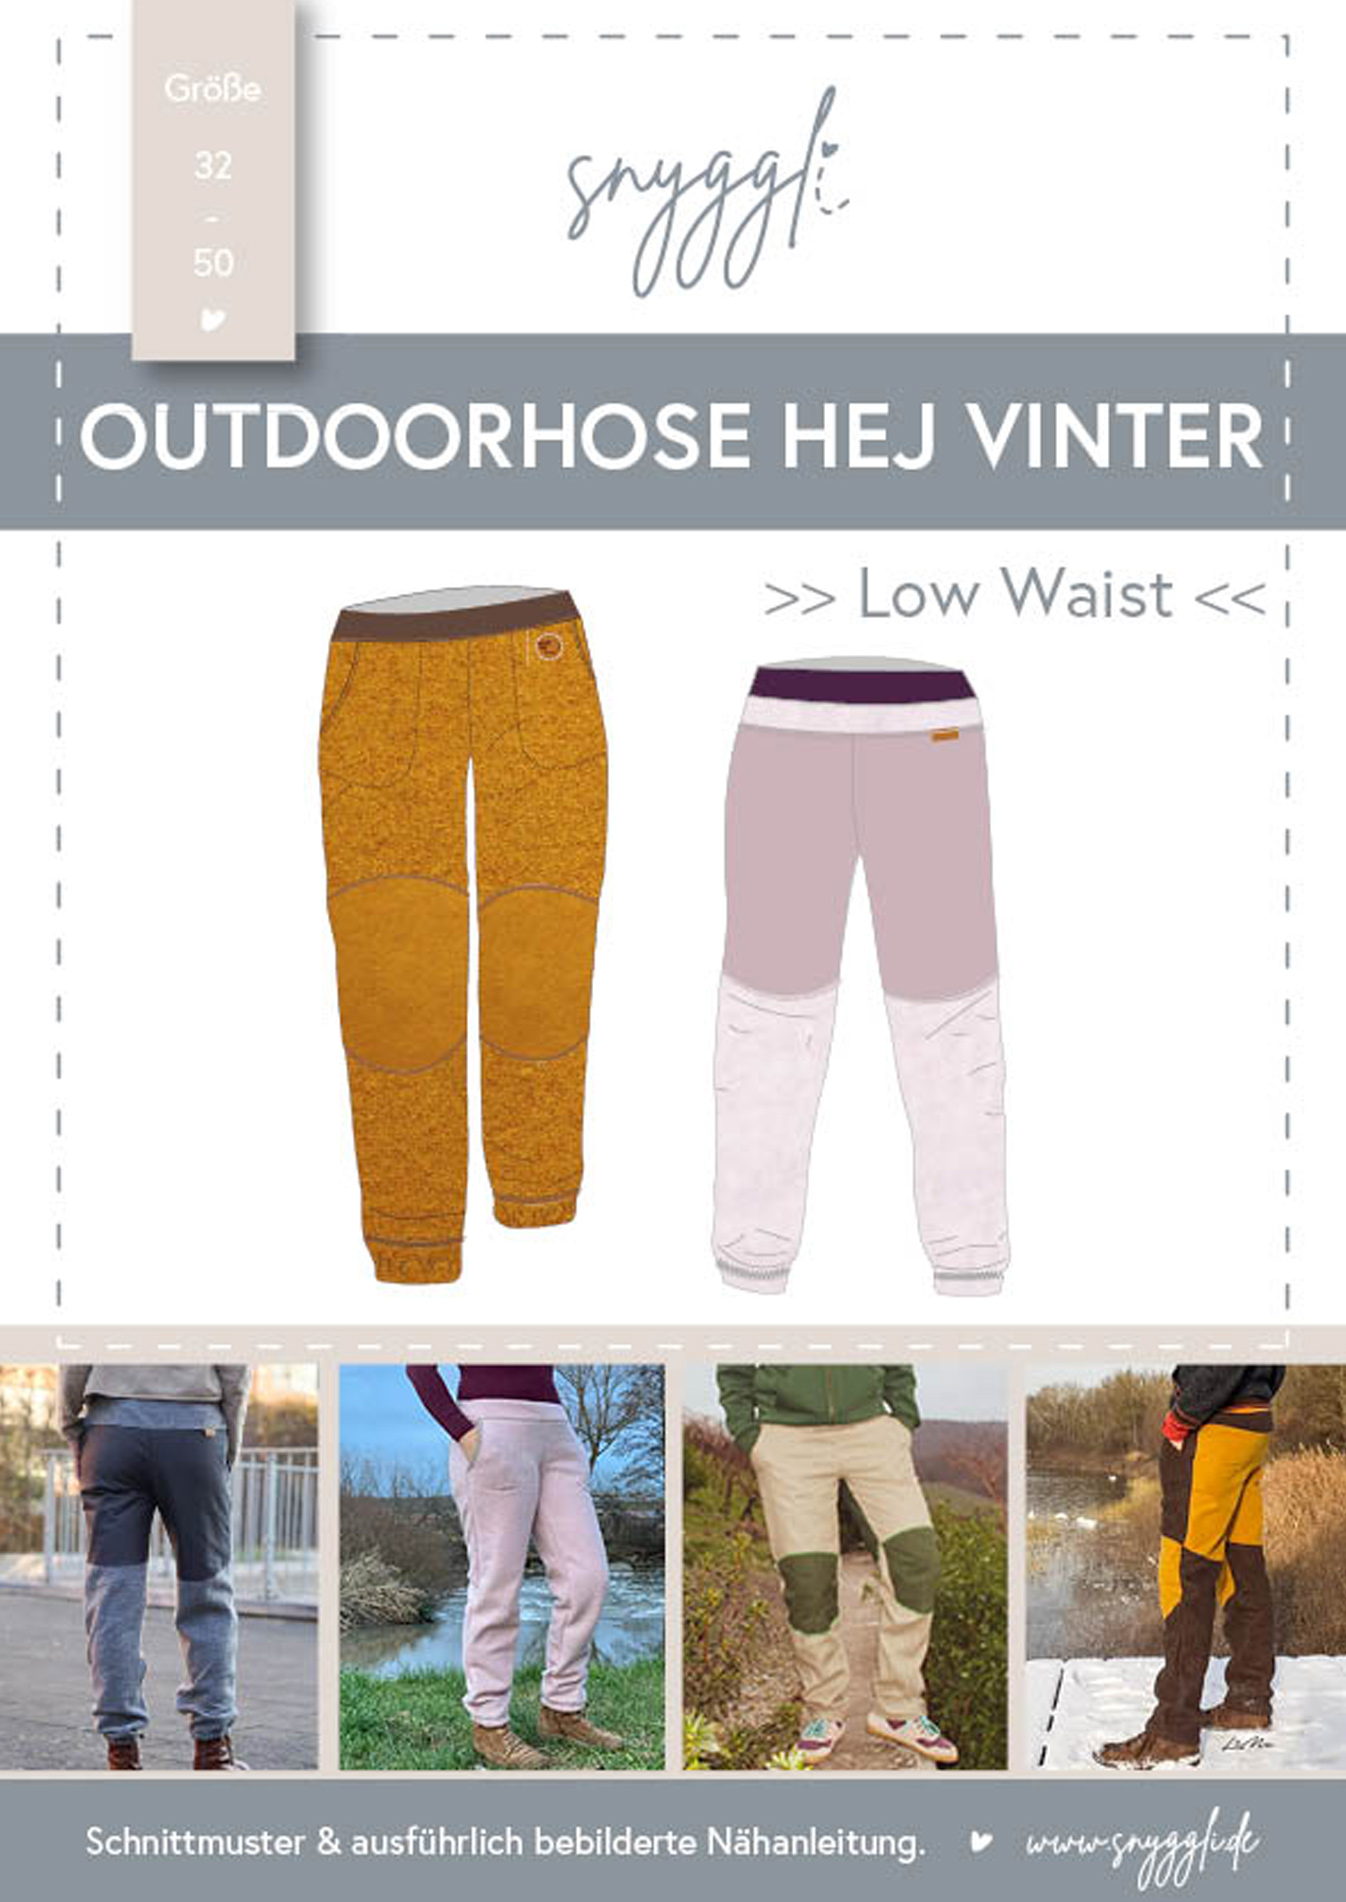 Schnittmuster-Snyggli-Nähanleitung-Outdoorhose-Hej-Vinter-low-waist-Damen-Walk-Cover